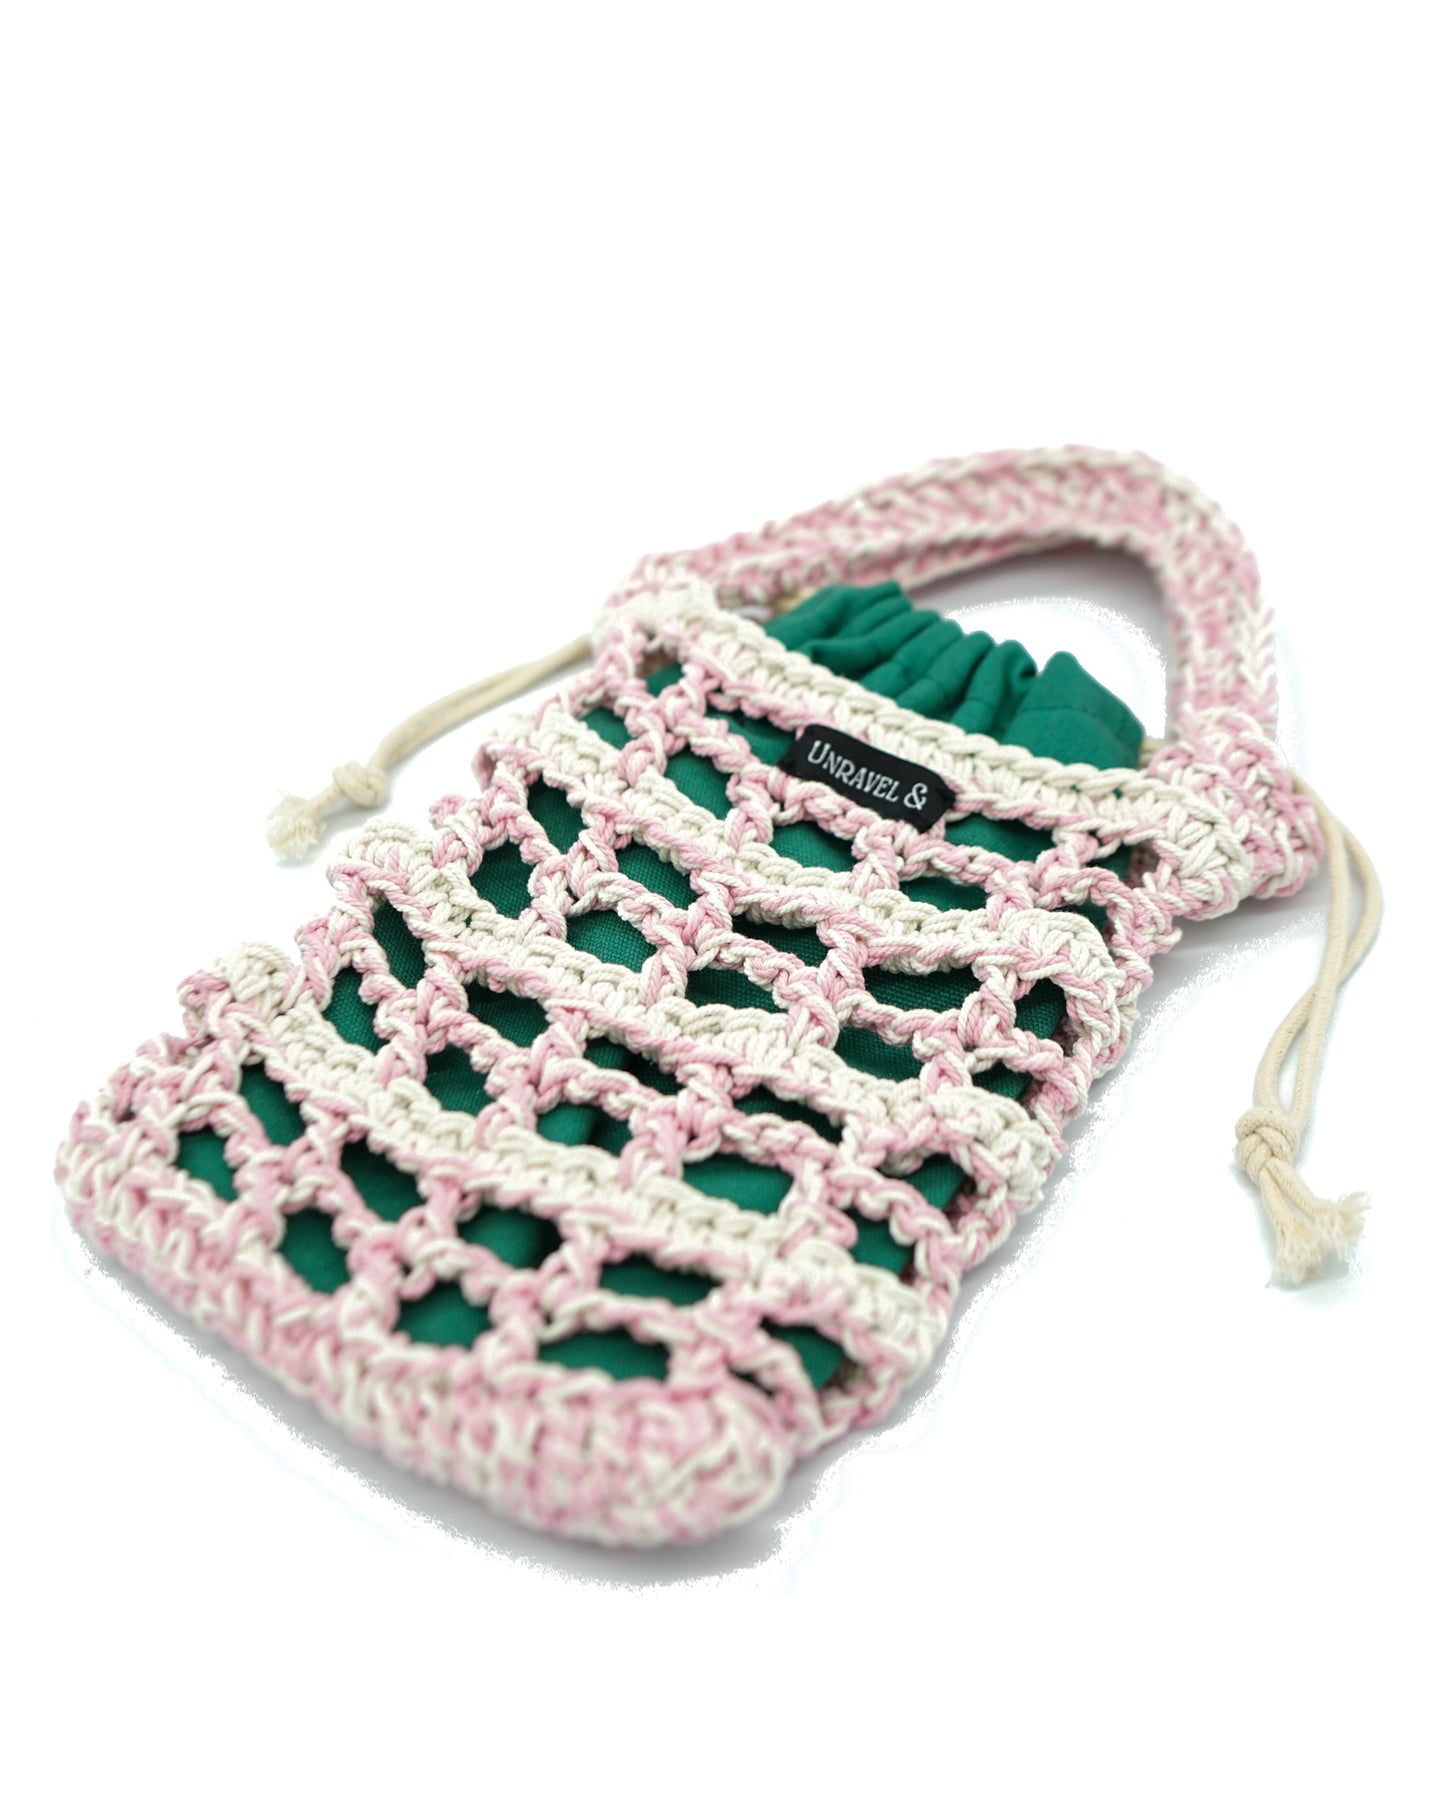 Safari Barbie Crochet Bag